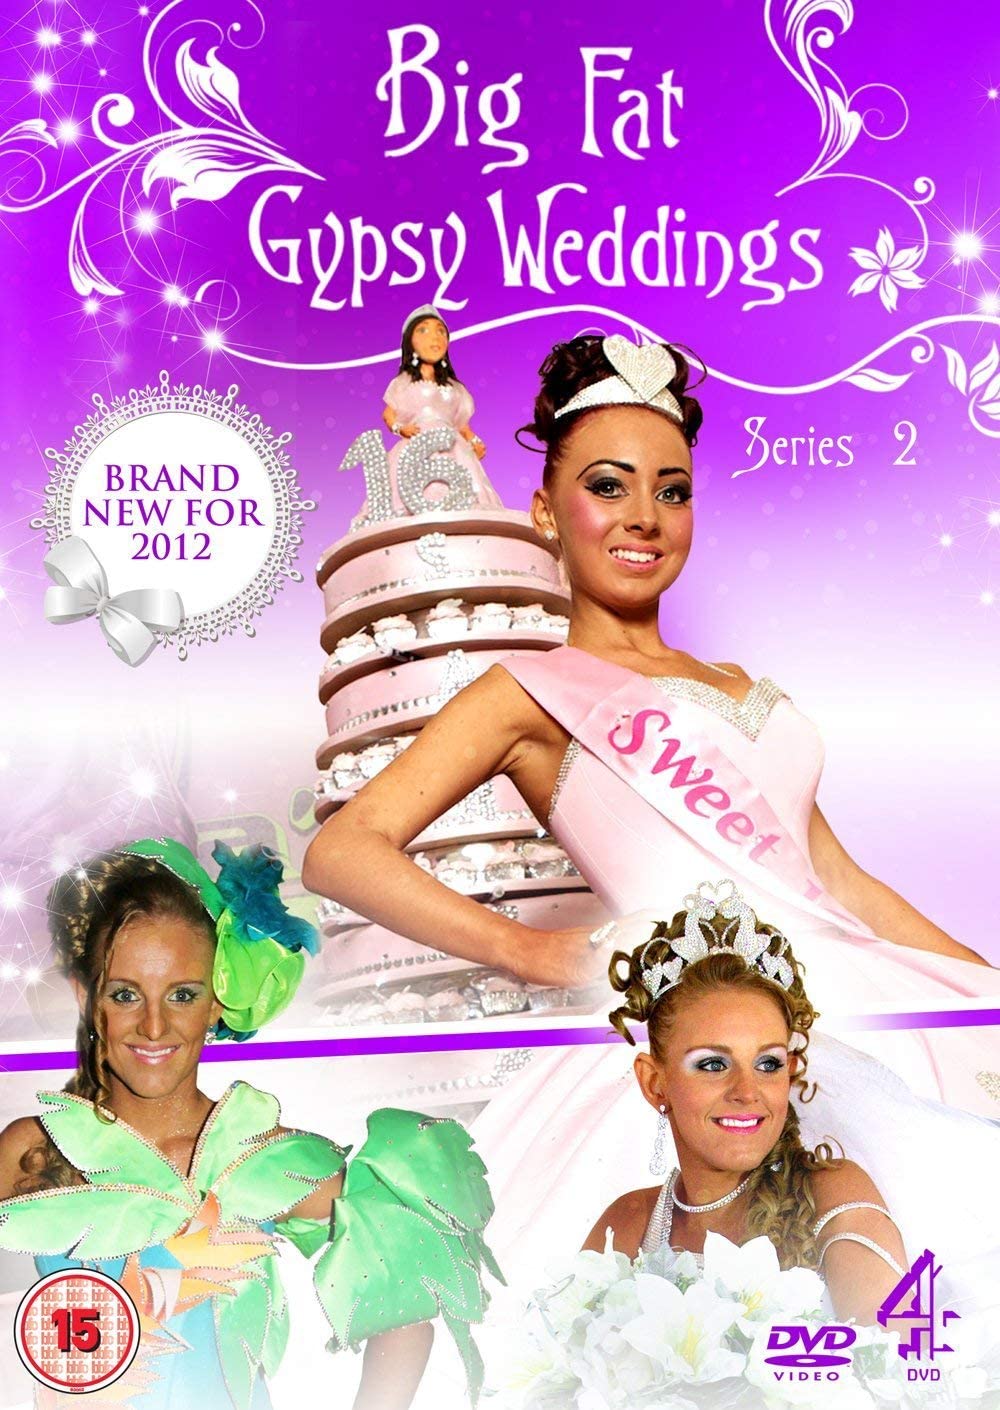 Big Fat Gypsy Weddings - Series 2 - Documentary [DVD]